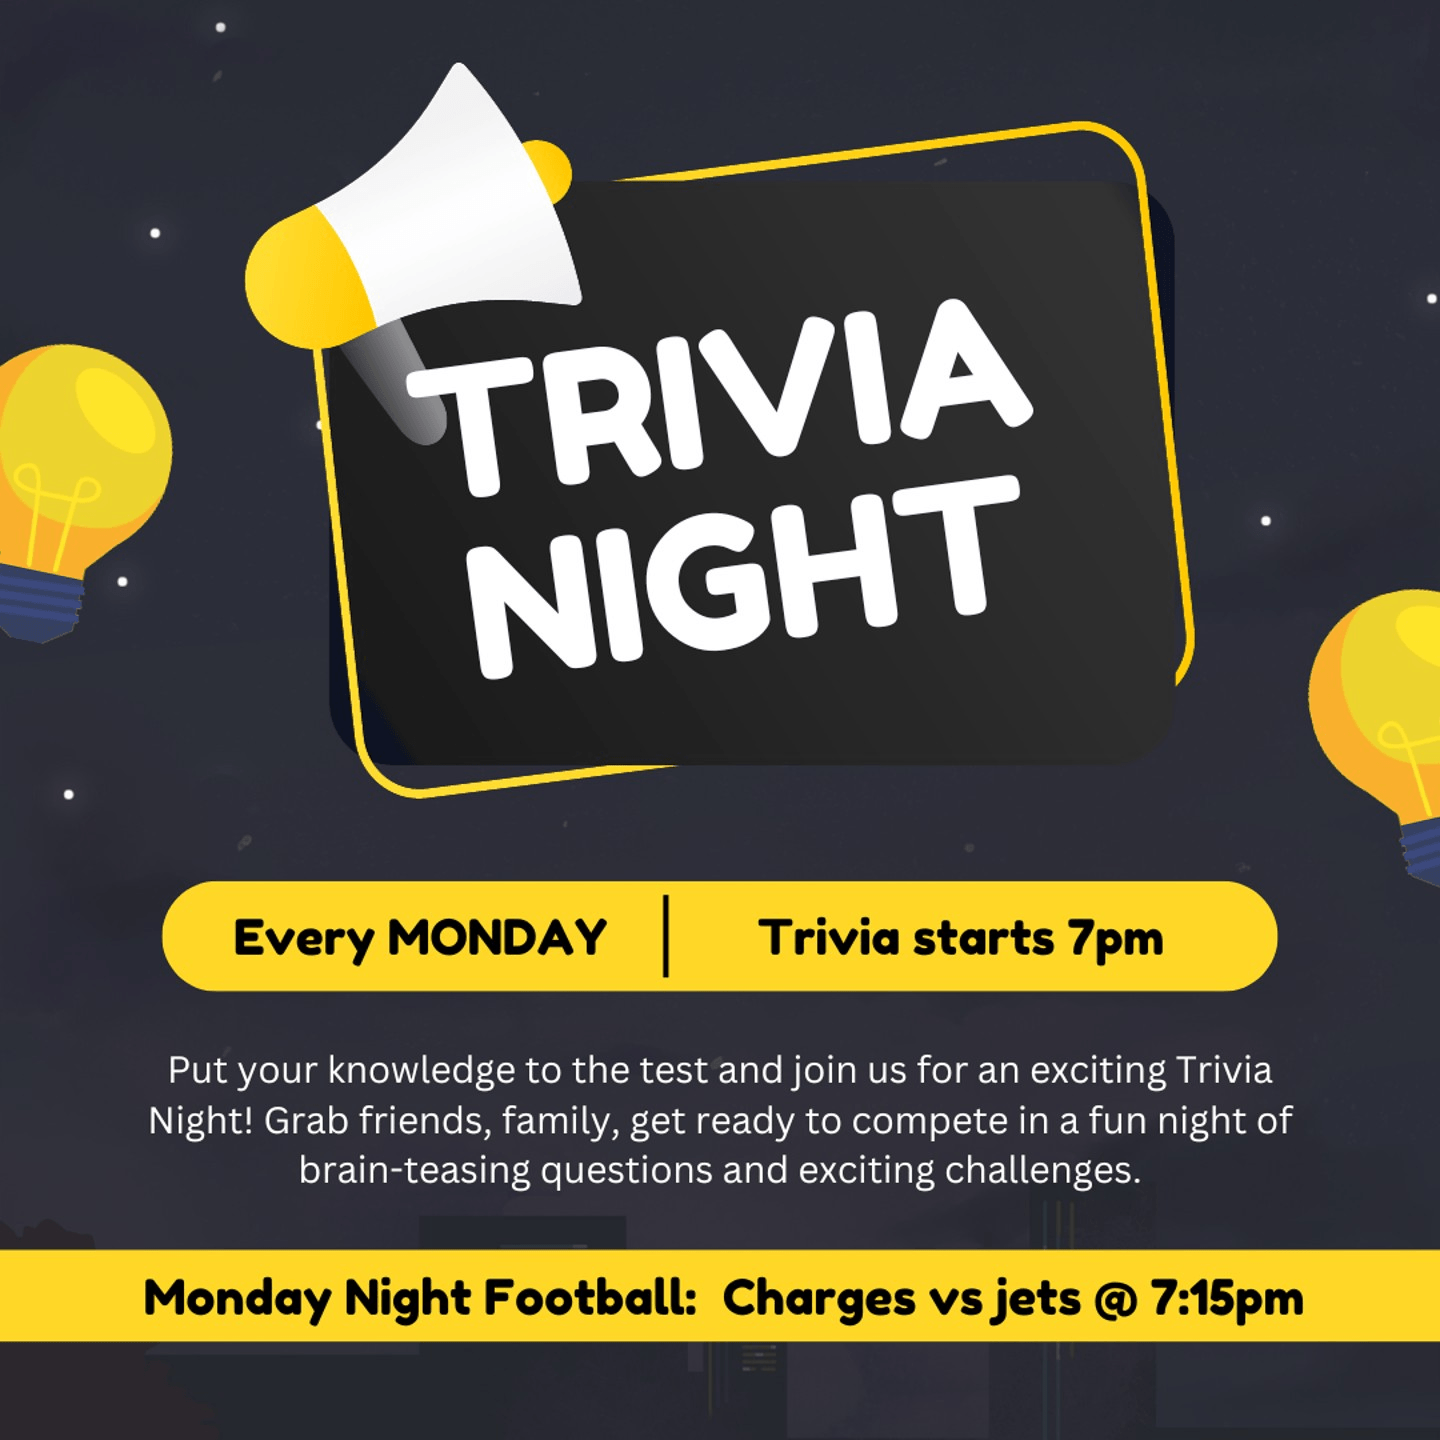 Trivia Night - Every Monday